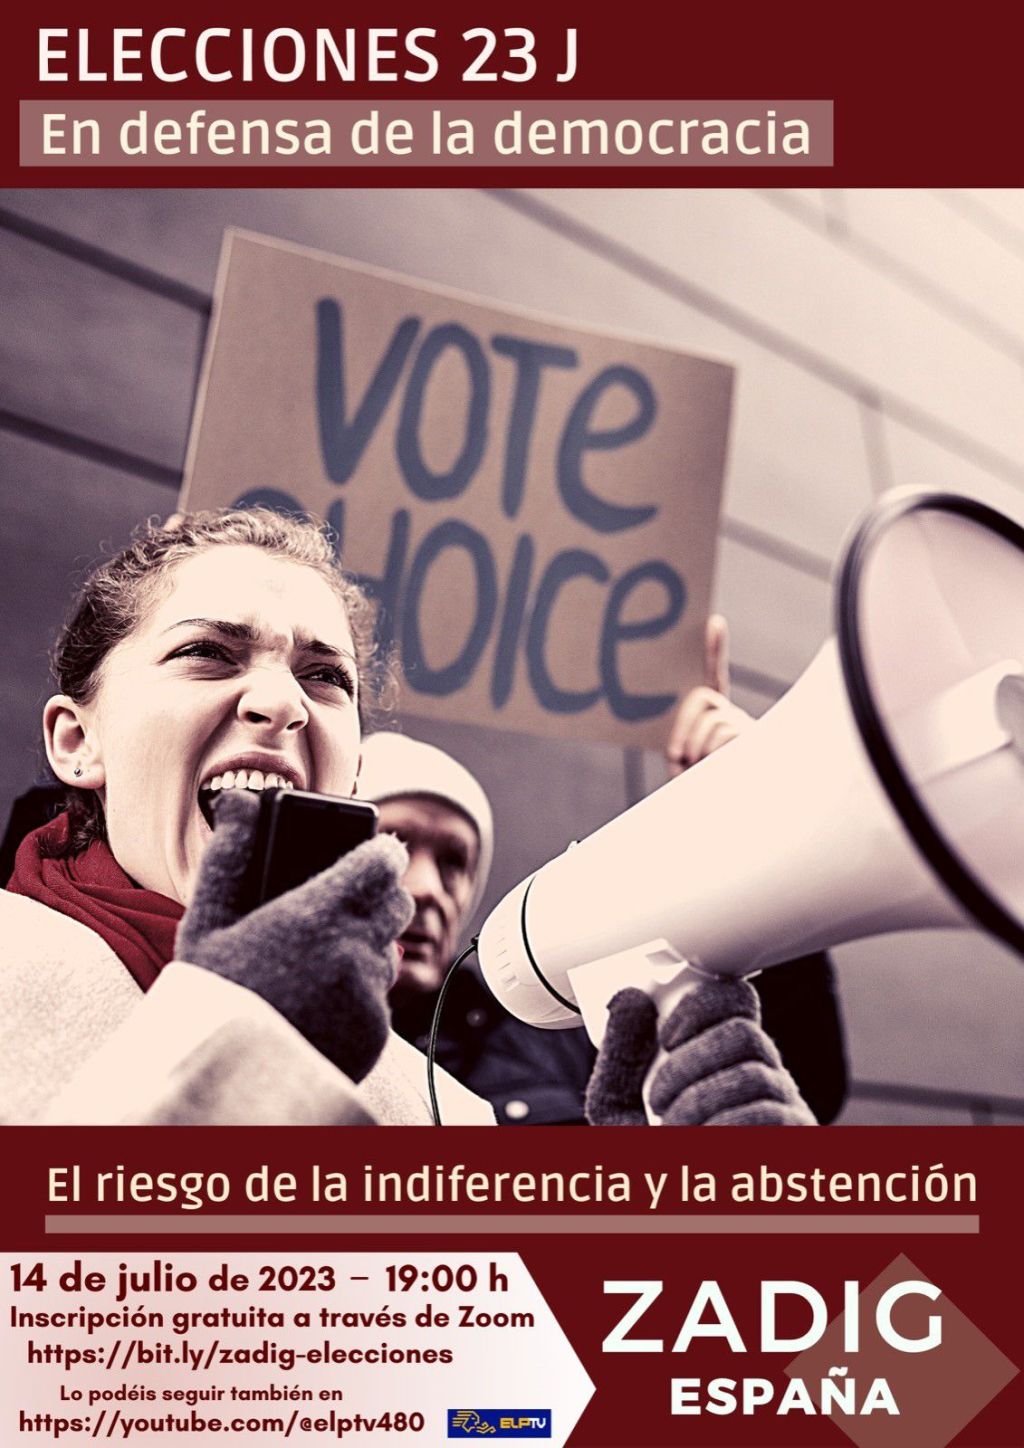 Zadig España 2023: Acto en defensa de la Democracia frente al riesgo de la indiferencia y la abstención